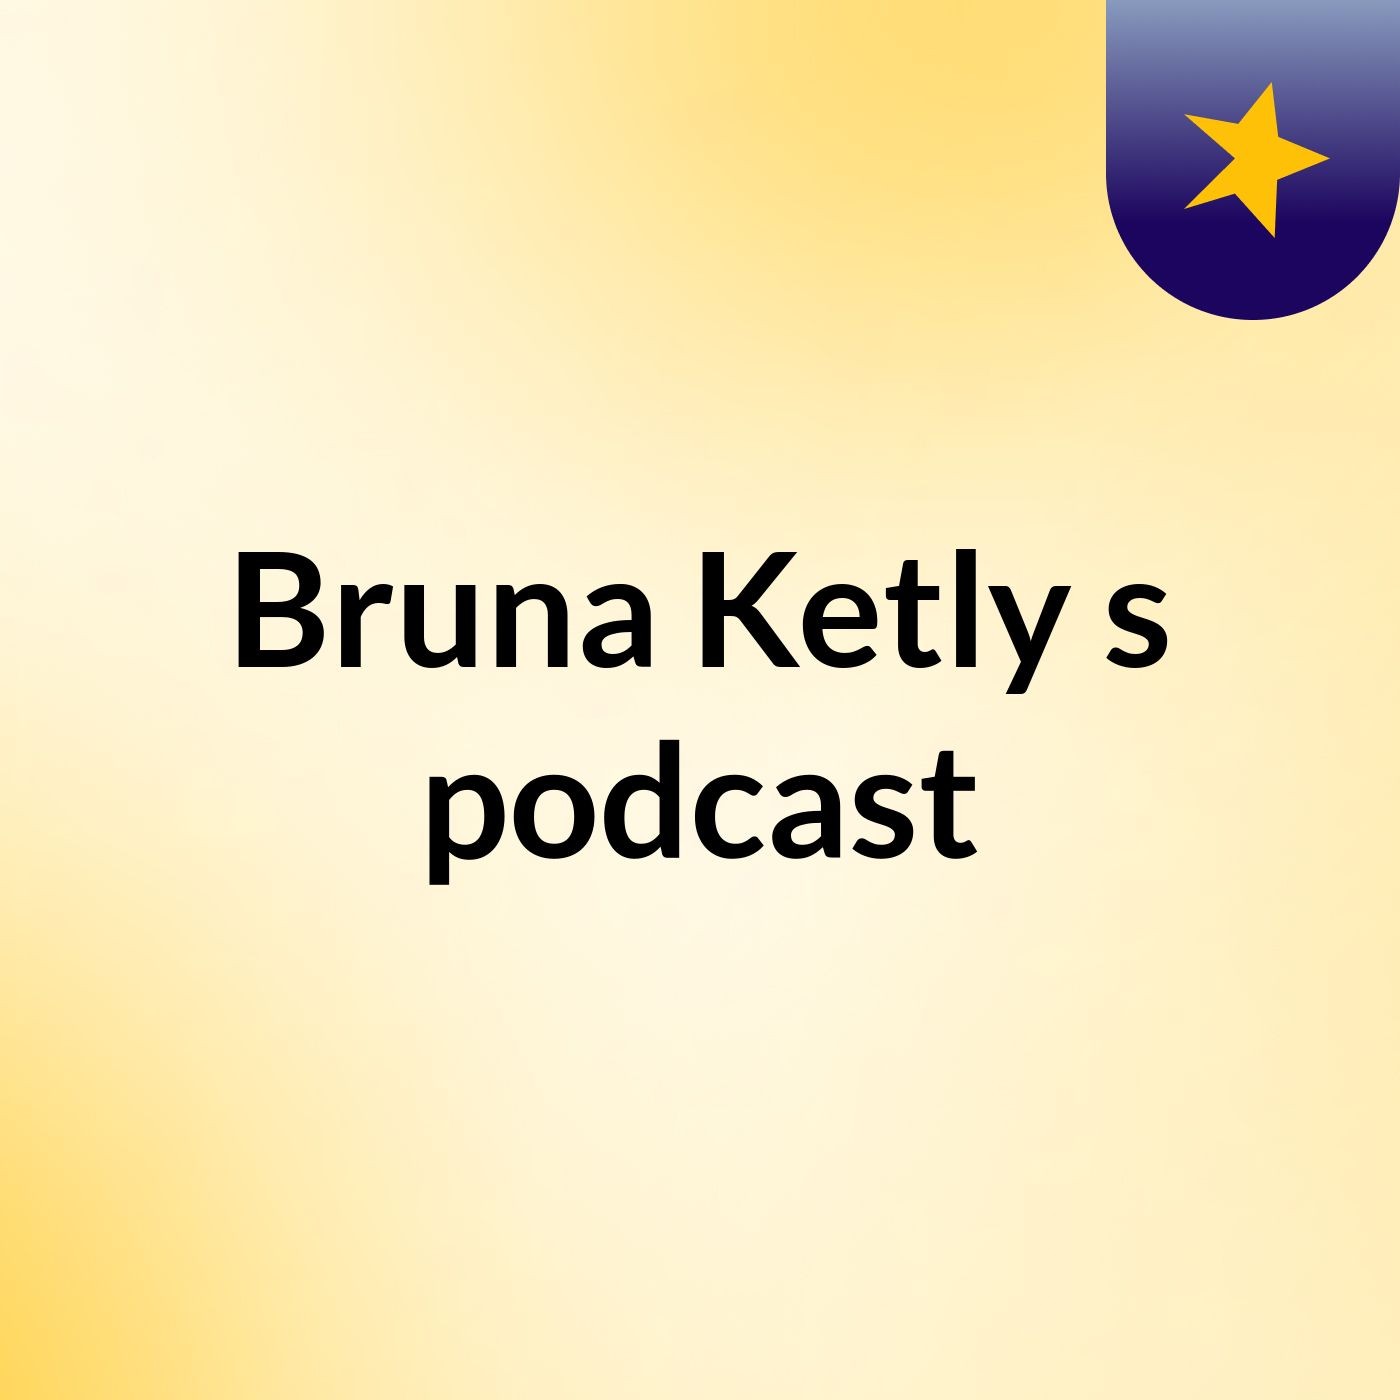 Bruna Ketly's podcast